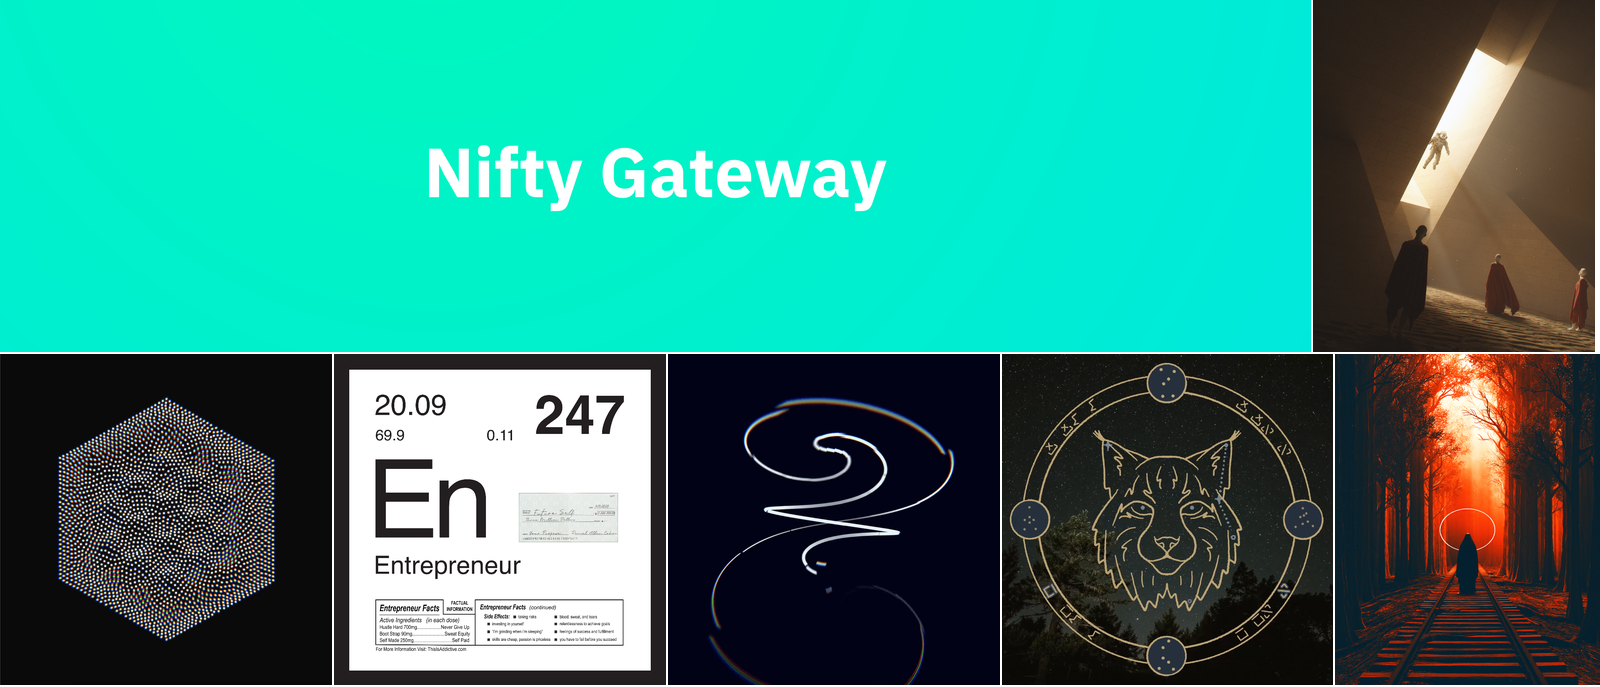 nifty-gateway-1.png (1600×687)